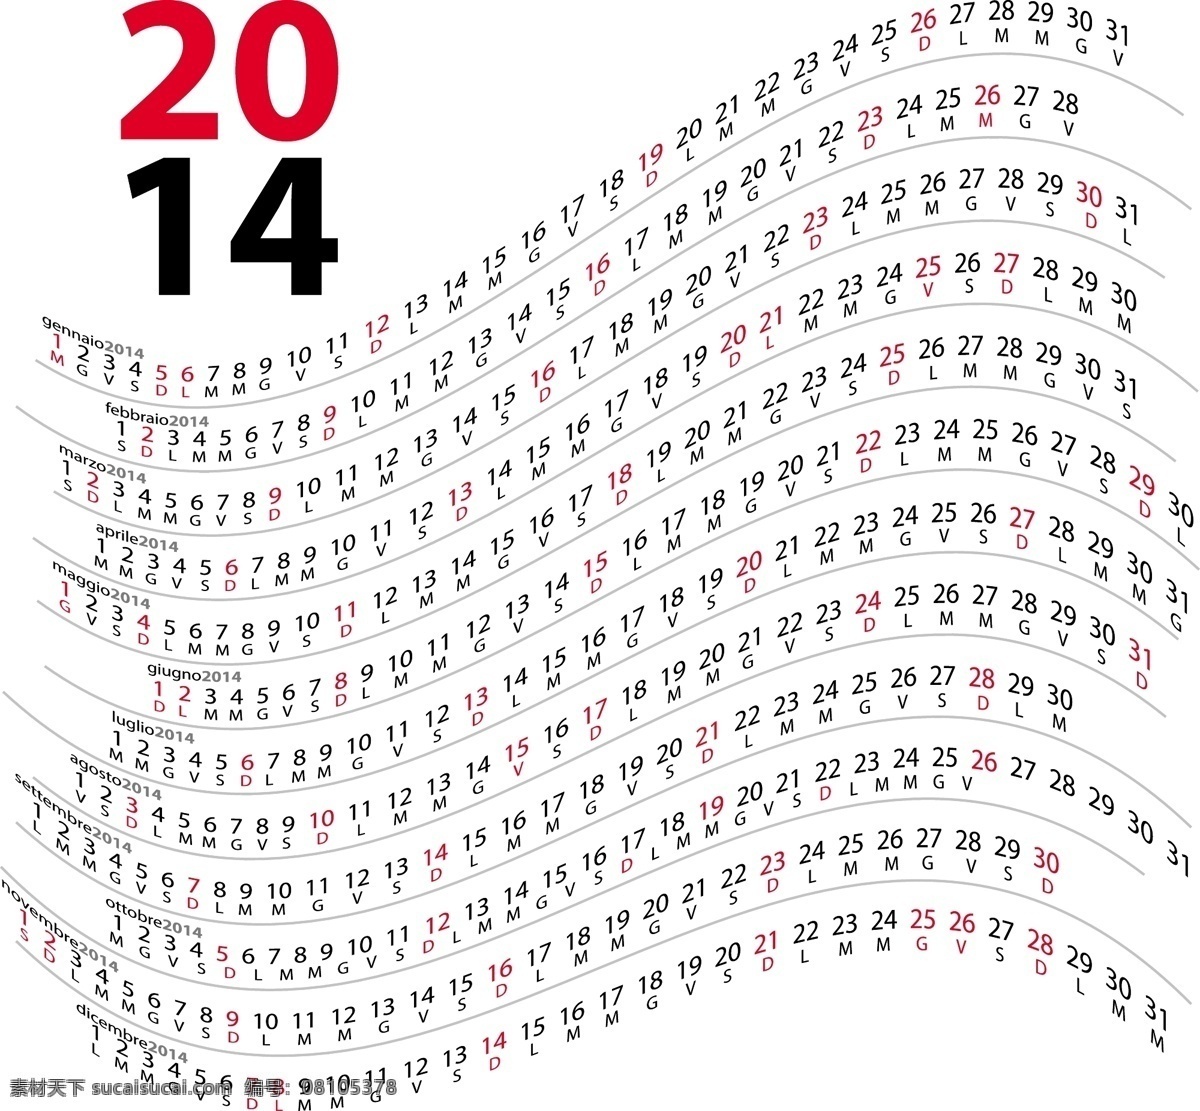 2014 年 年历 模板 矢量 日历 挂历 模板下载 马年素材 台历 马年 马 元旦 节日素材 2015羊年